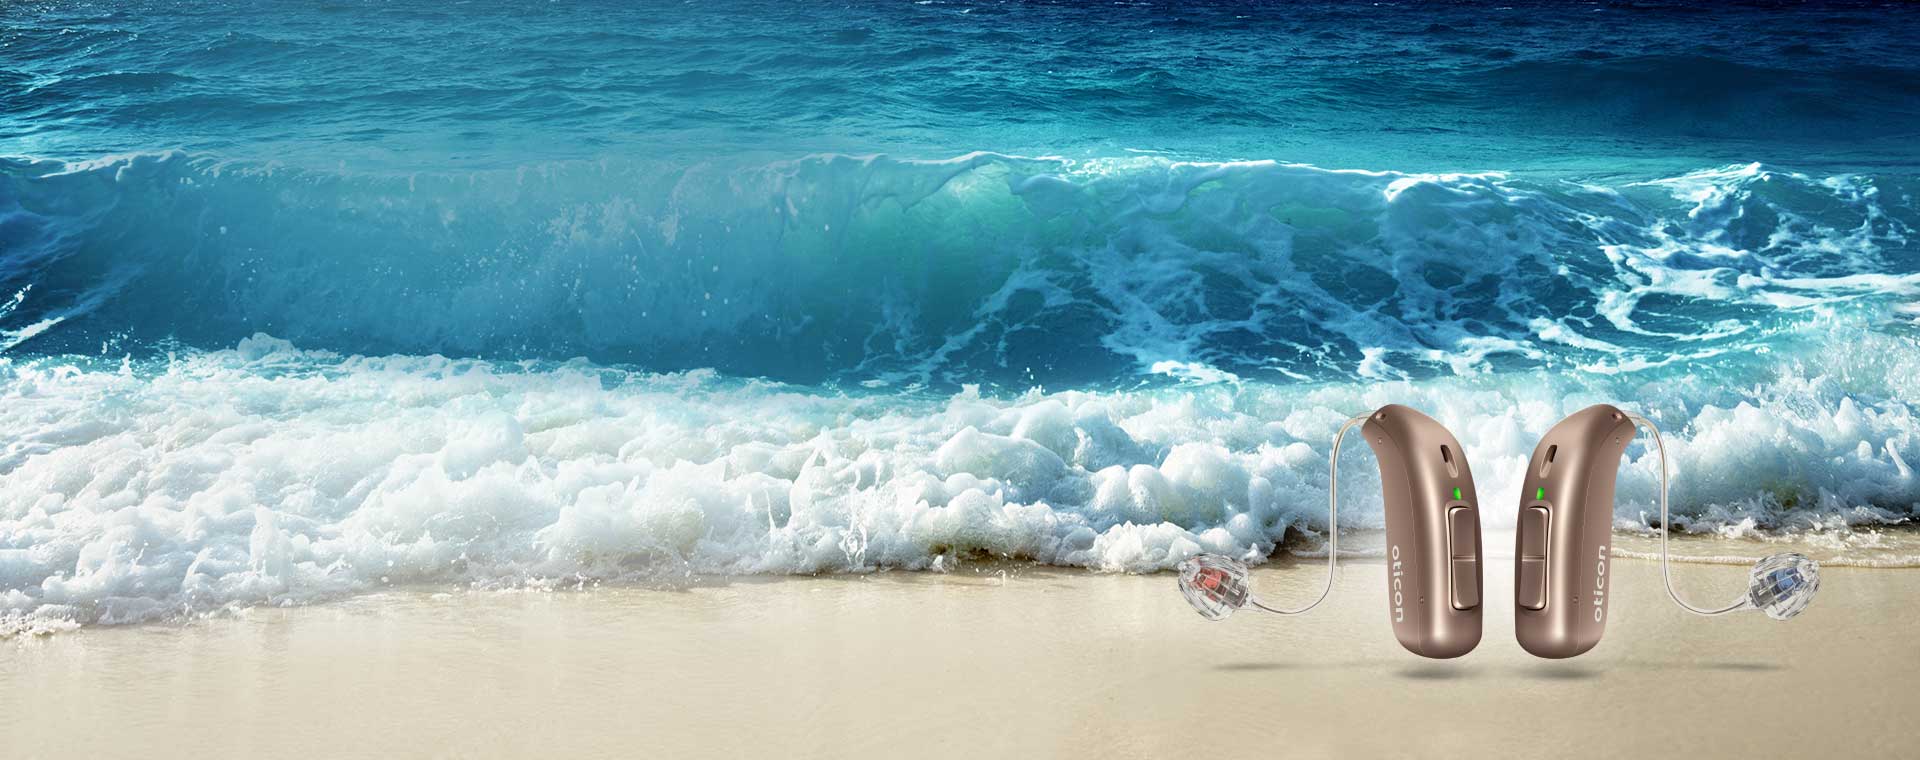 L’image montre deux appareils auditifs à côté de la mer